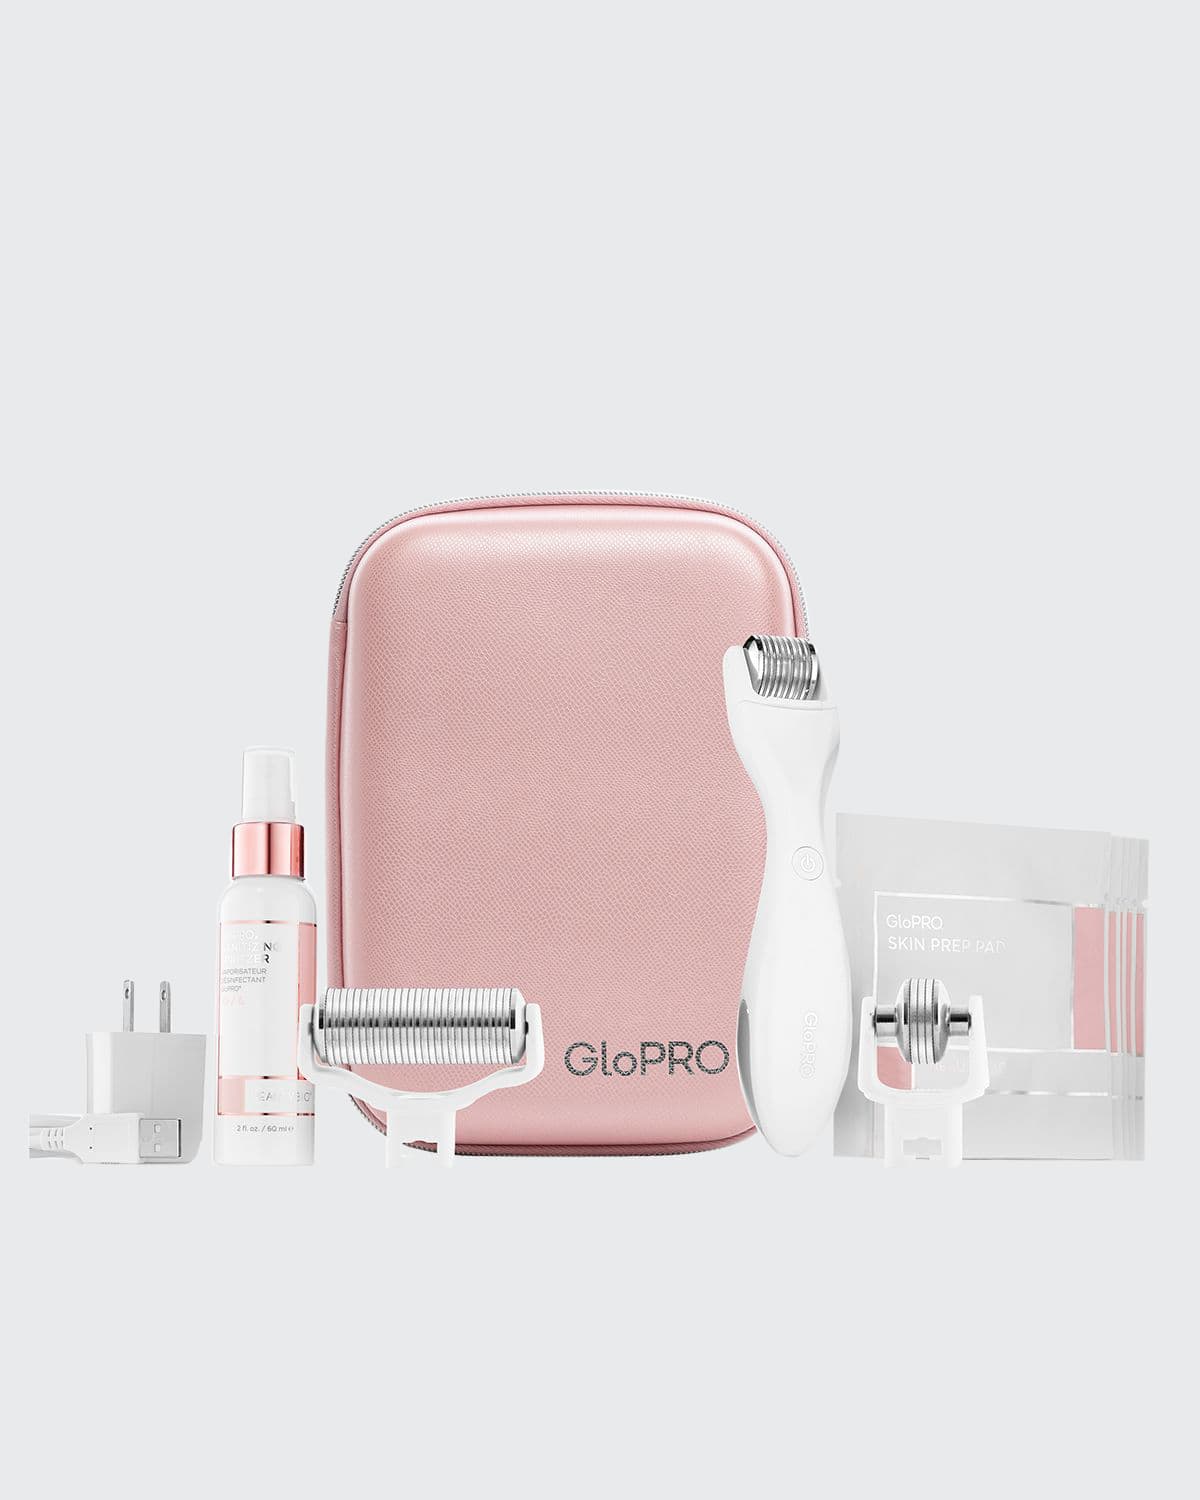 GloPRO Pack N' Glo Essentials Set ($309 Value)